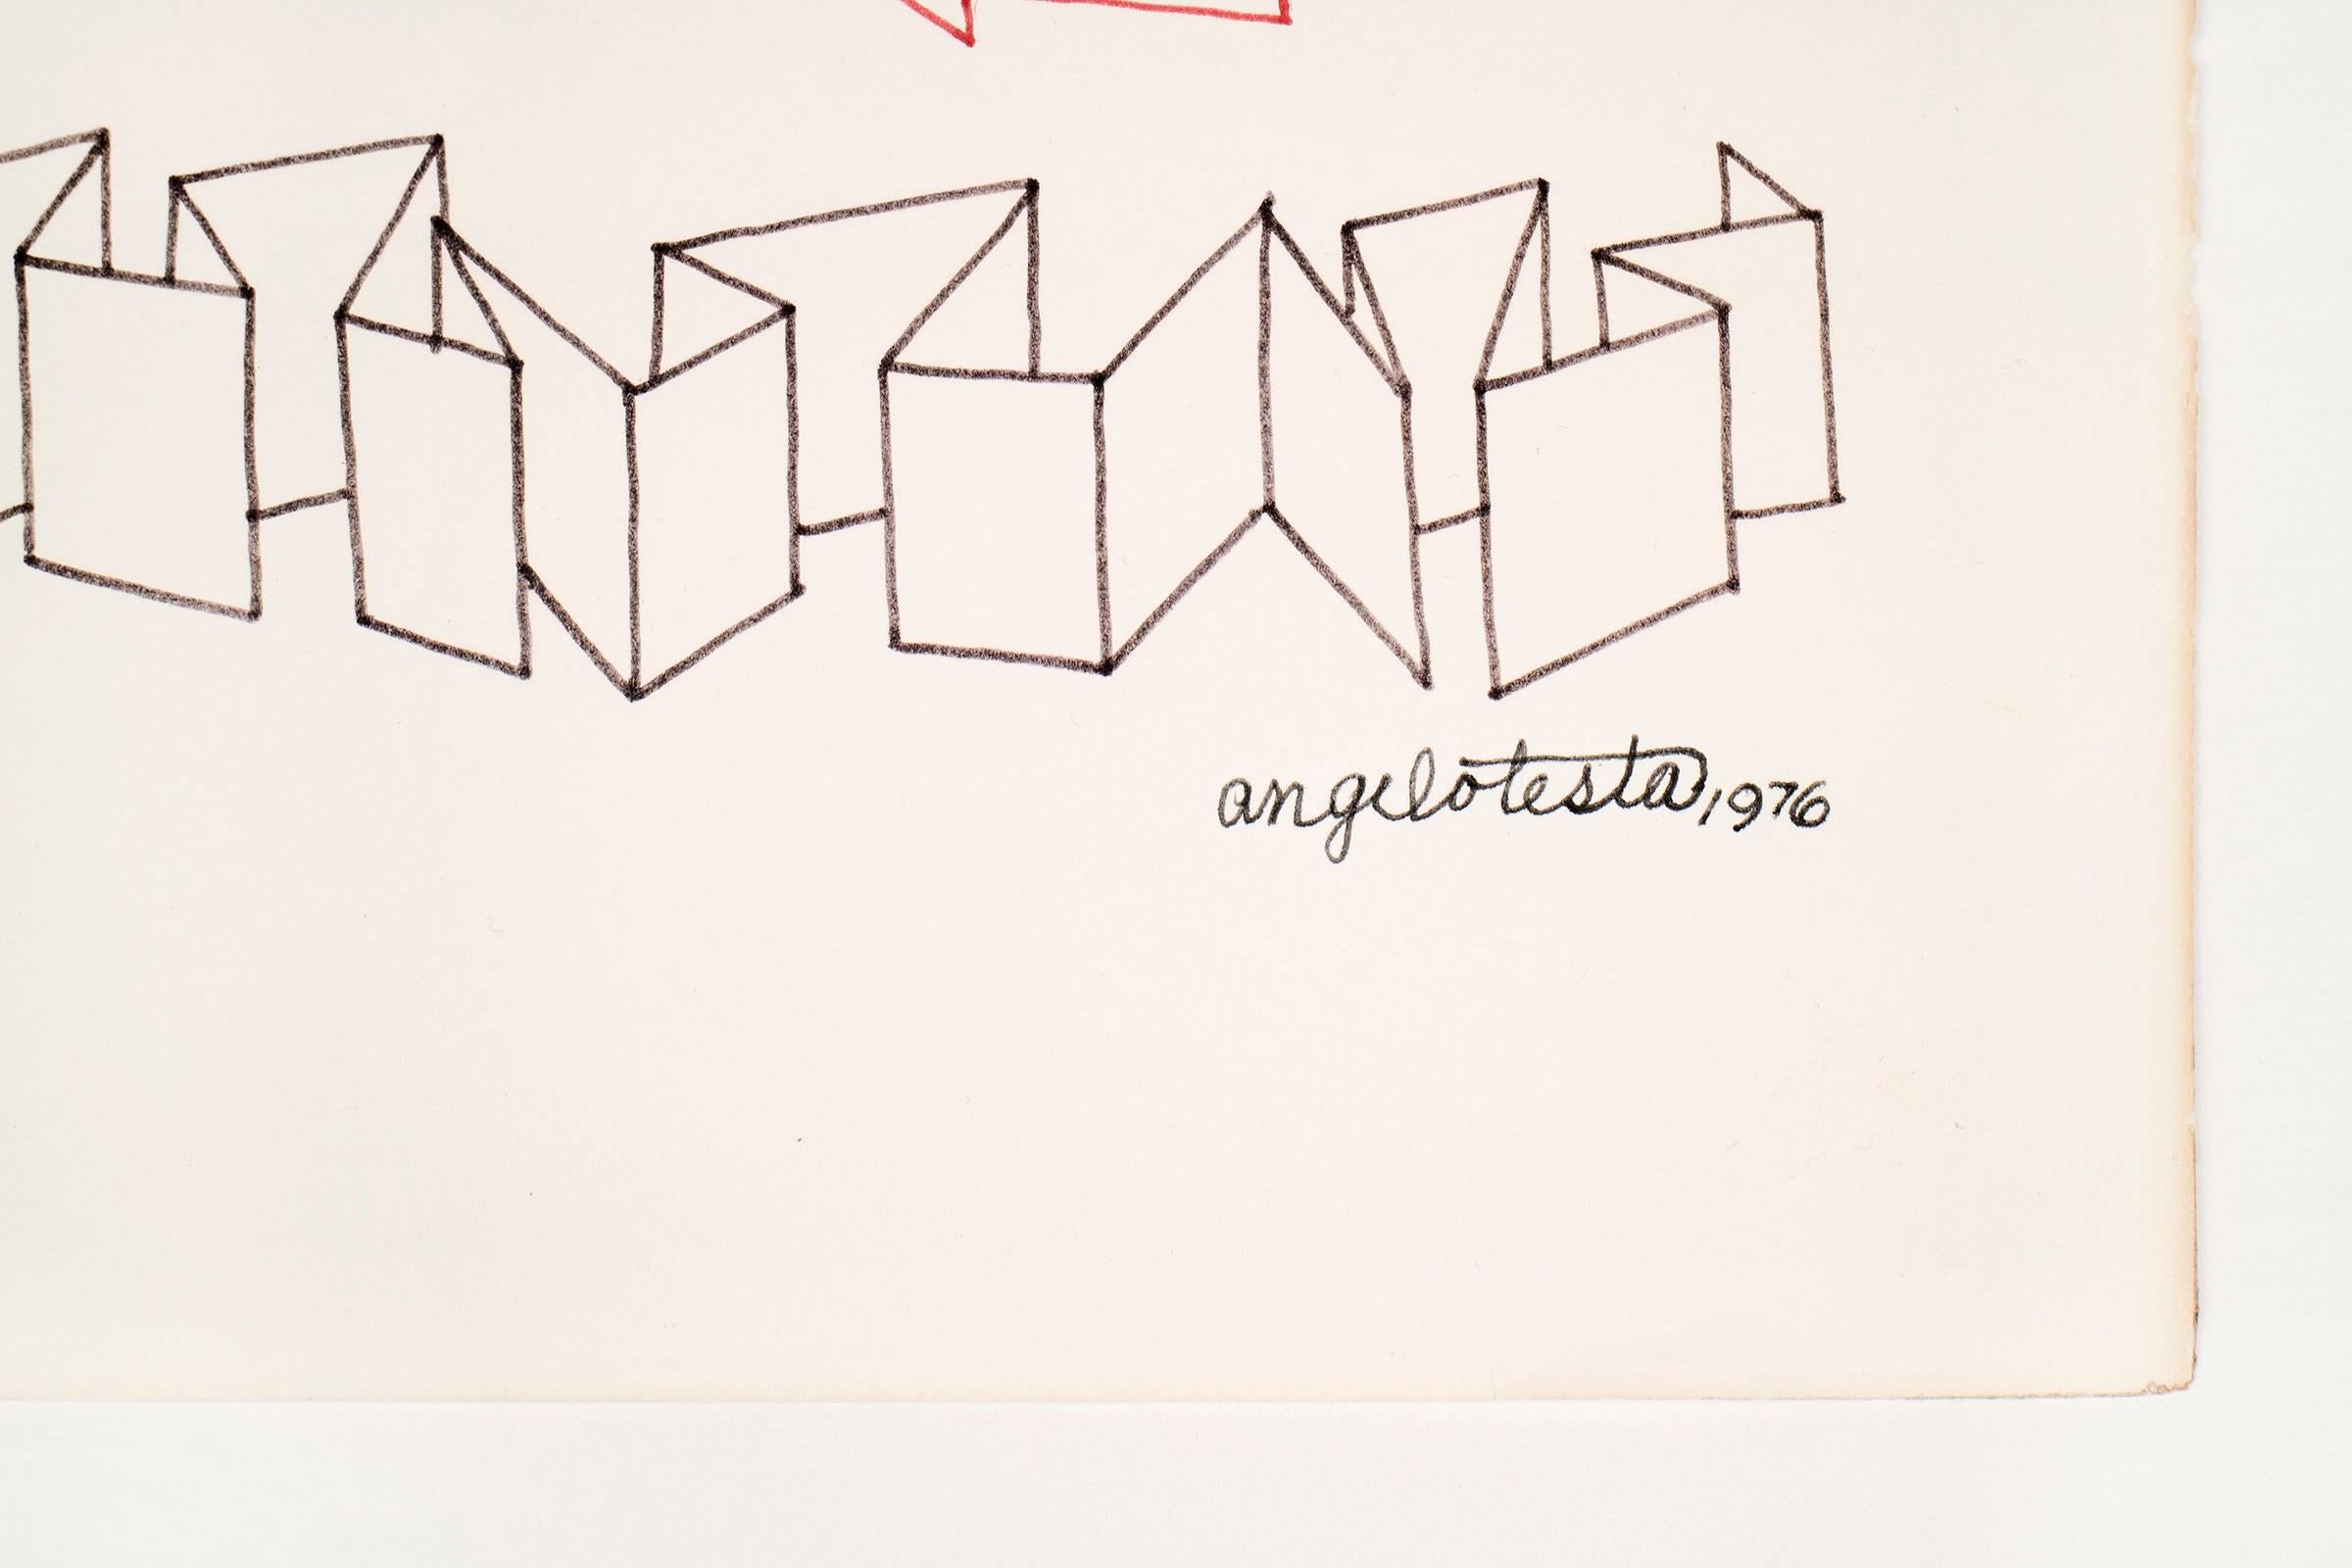 Angelo Testa Druck. Tinte auf Papier. Unterzeichnet und datiert; [Papierwahlzettel Angelo Testa 1976].

Angelo Testa war ein amerikanischer Textildesigner, der 1945 als erster Absolvent des Institute of Design in Chicago abschloss. Der für seine